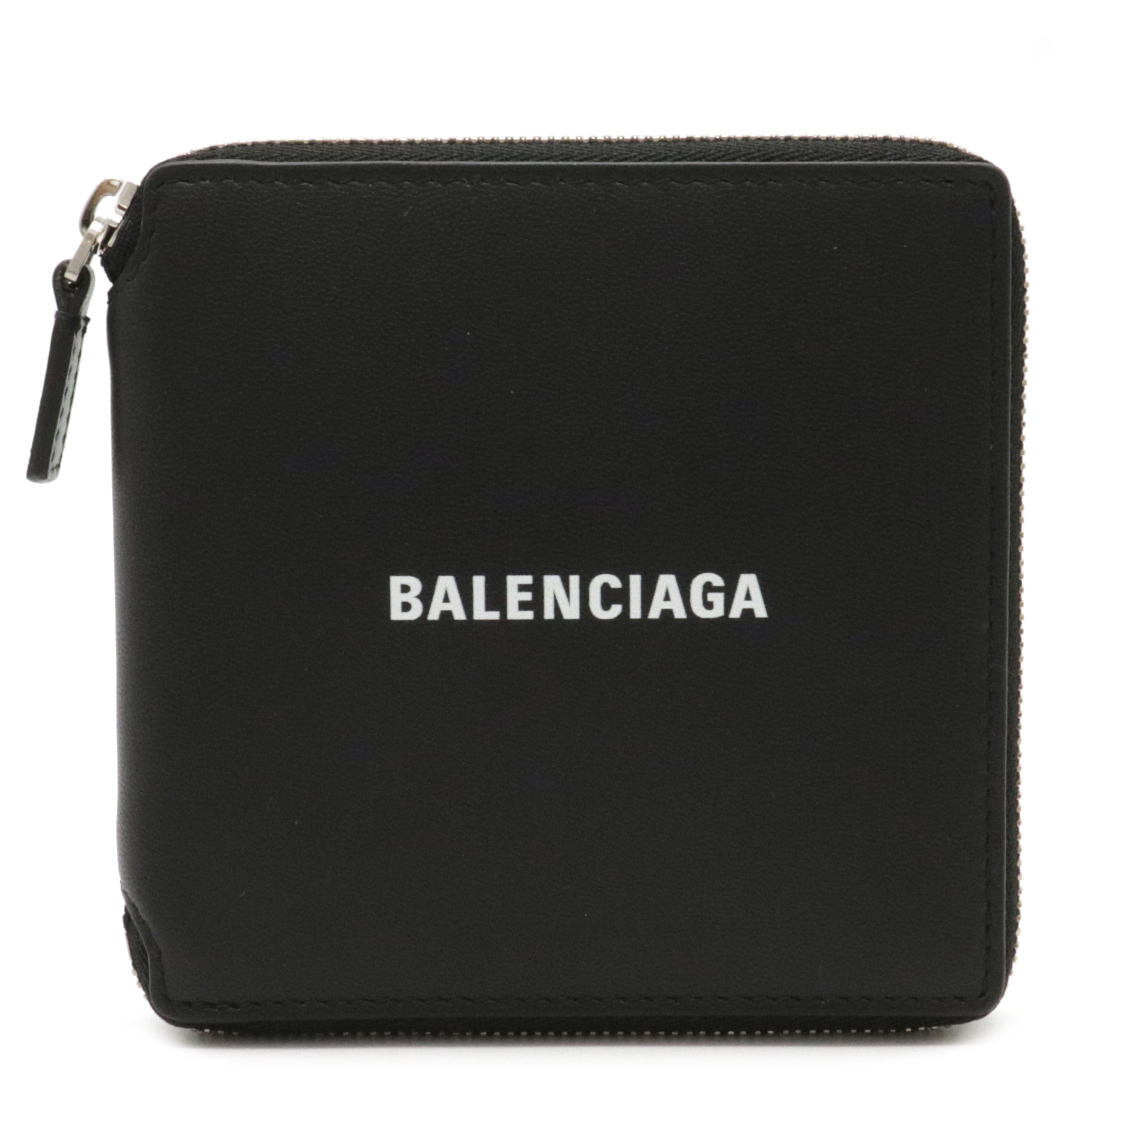 財布 Balenciaga バレンシアガ ロゴ ラウンドファスナー コンパクトウォレット 2つ折財布 二つ折り財布 レザー ブラック 黒 ホワイト 白 中古 Mozago Com